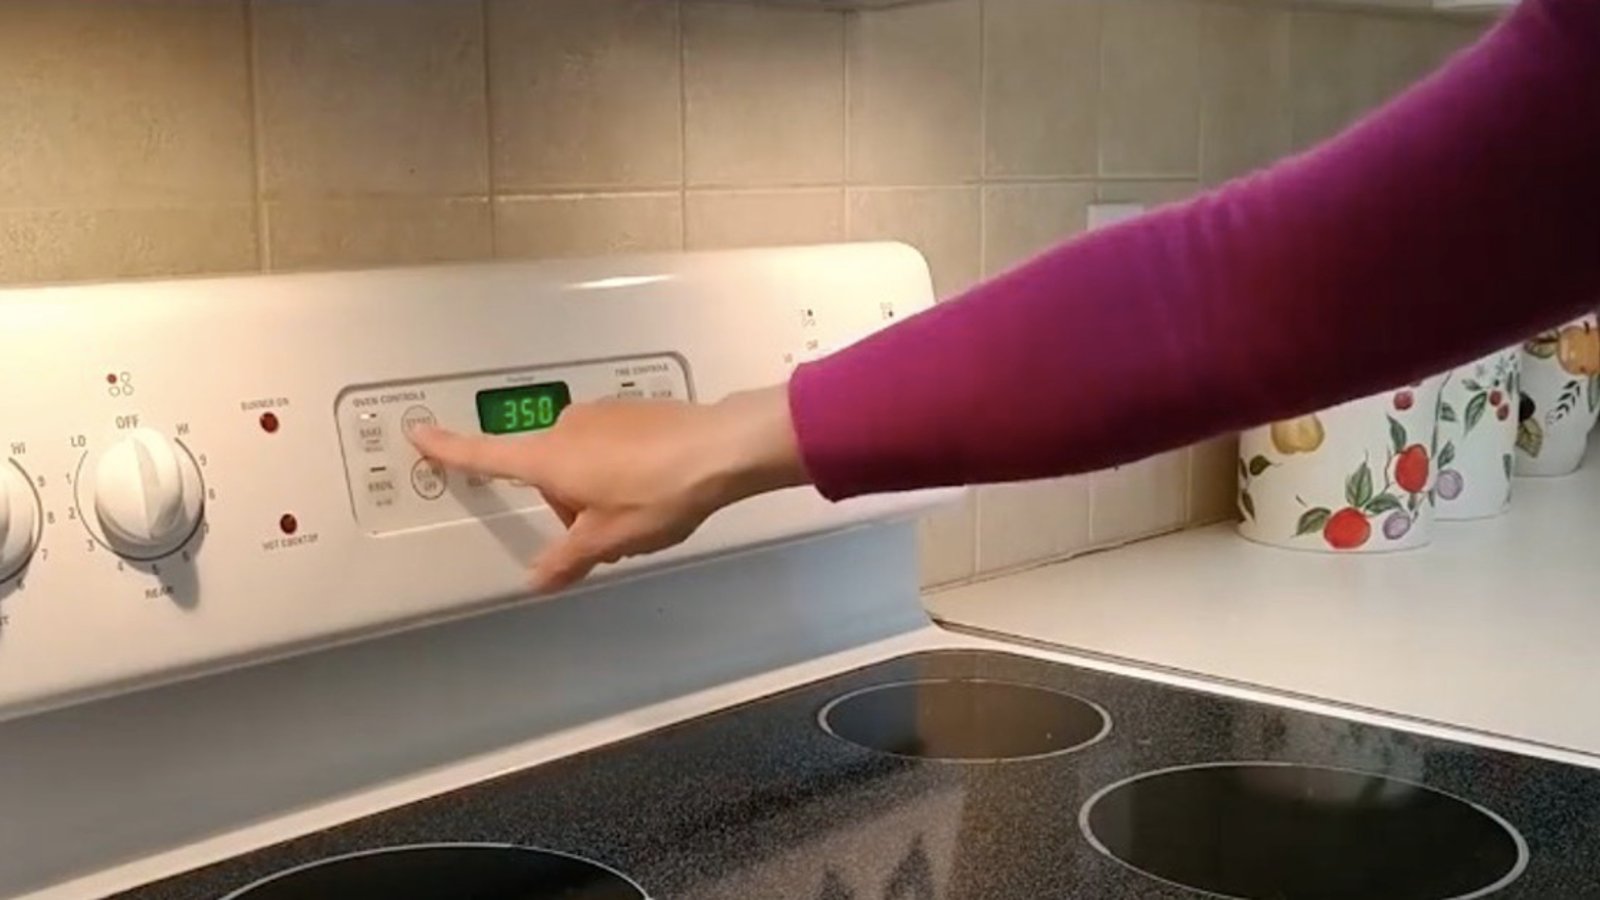 Quelle est la meilleure façon pour calibrer la température de votre cuisinière?